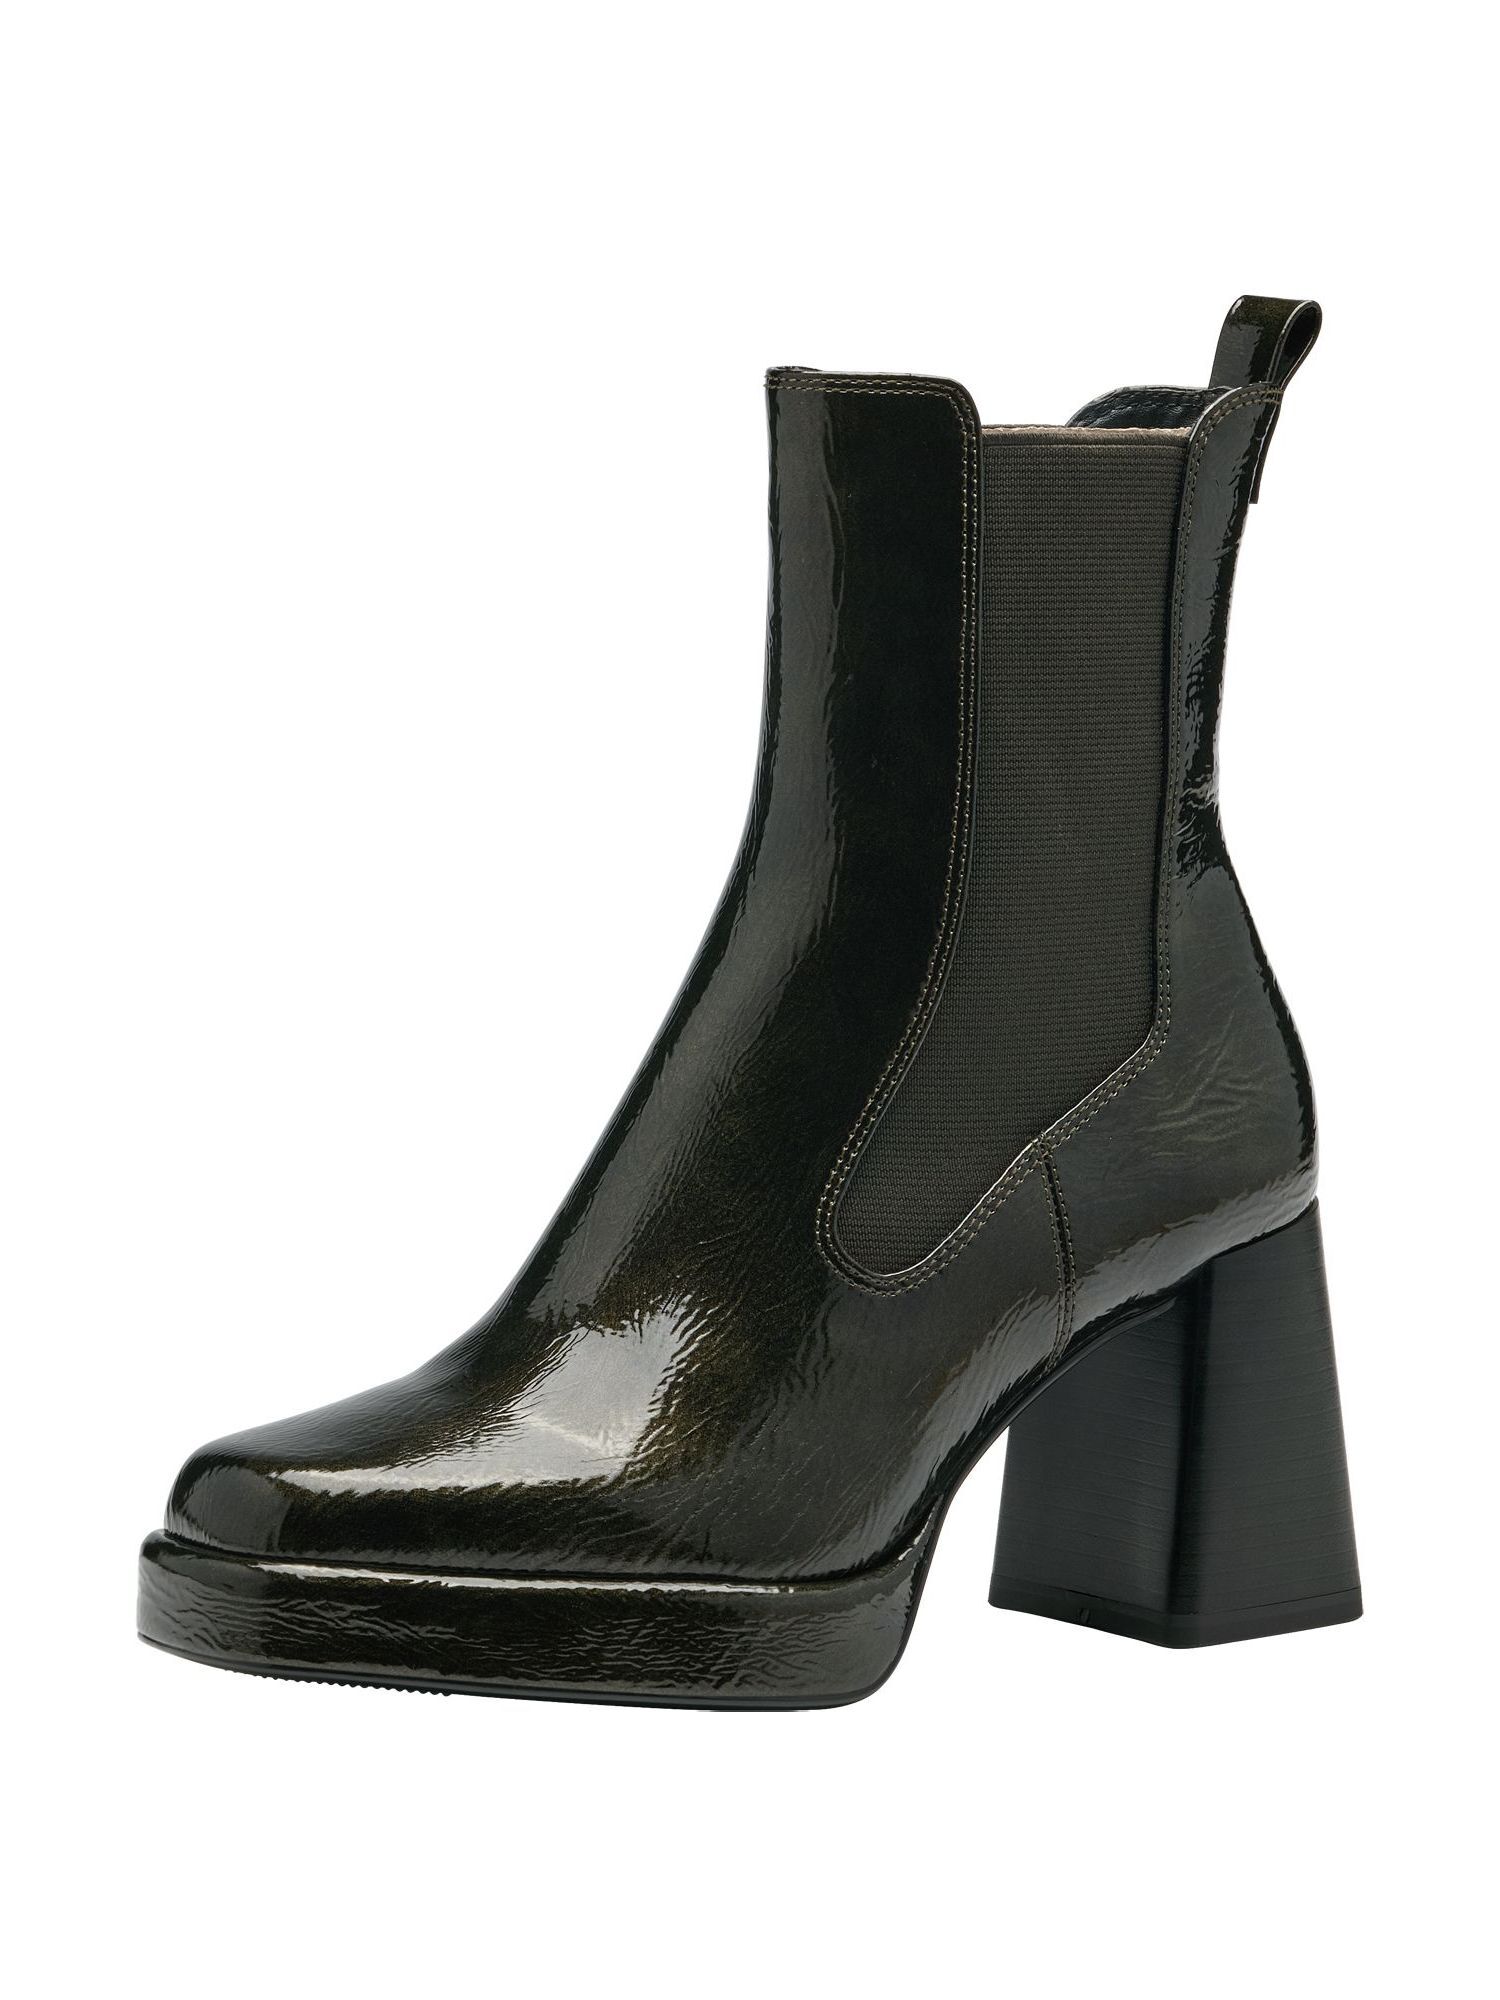 Ботинки Tamaris Chelsea Boot, оливковый ботинки женские tamaris оливковый 36